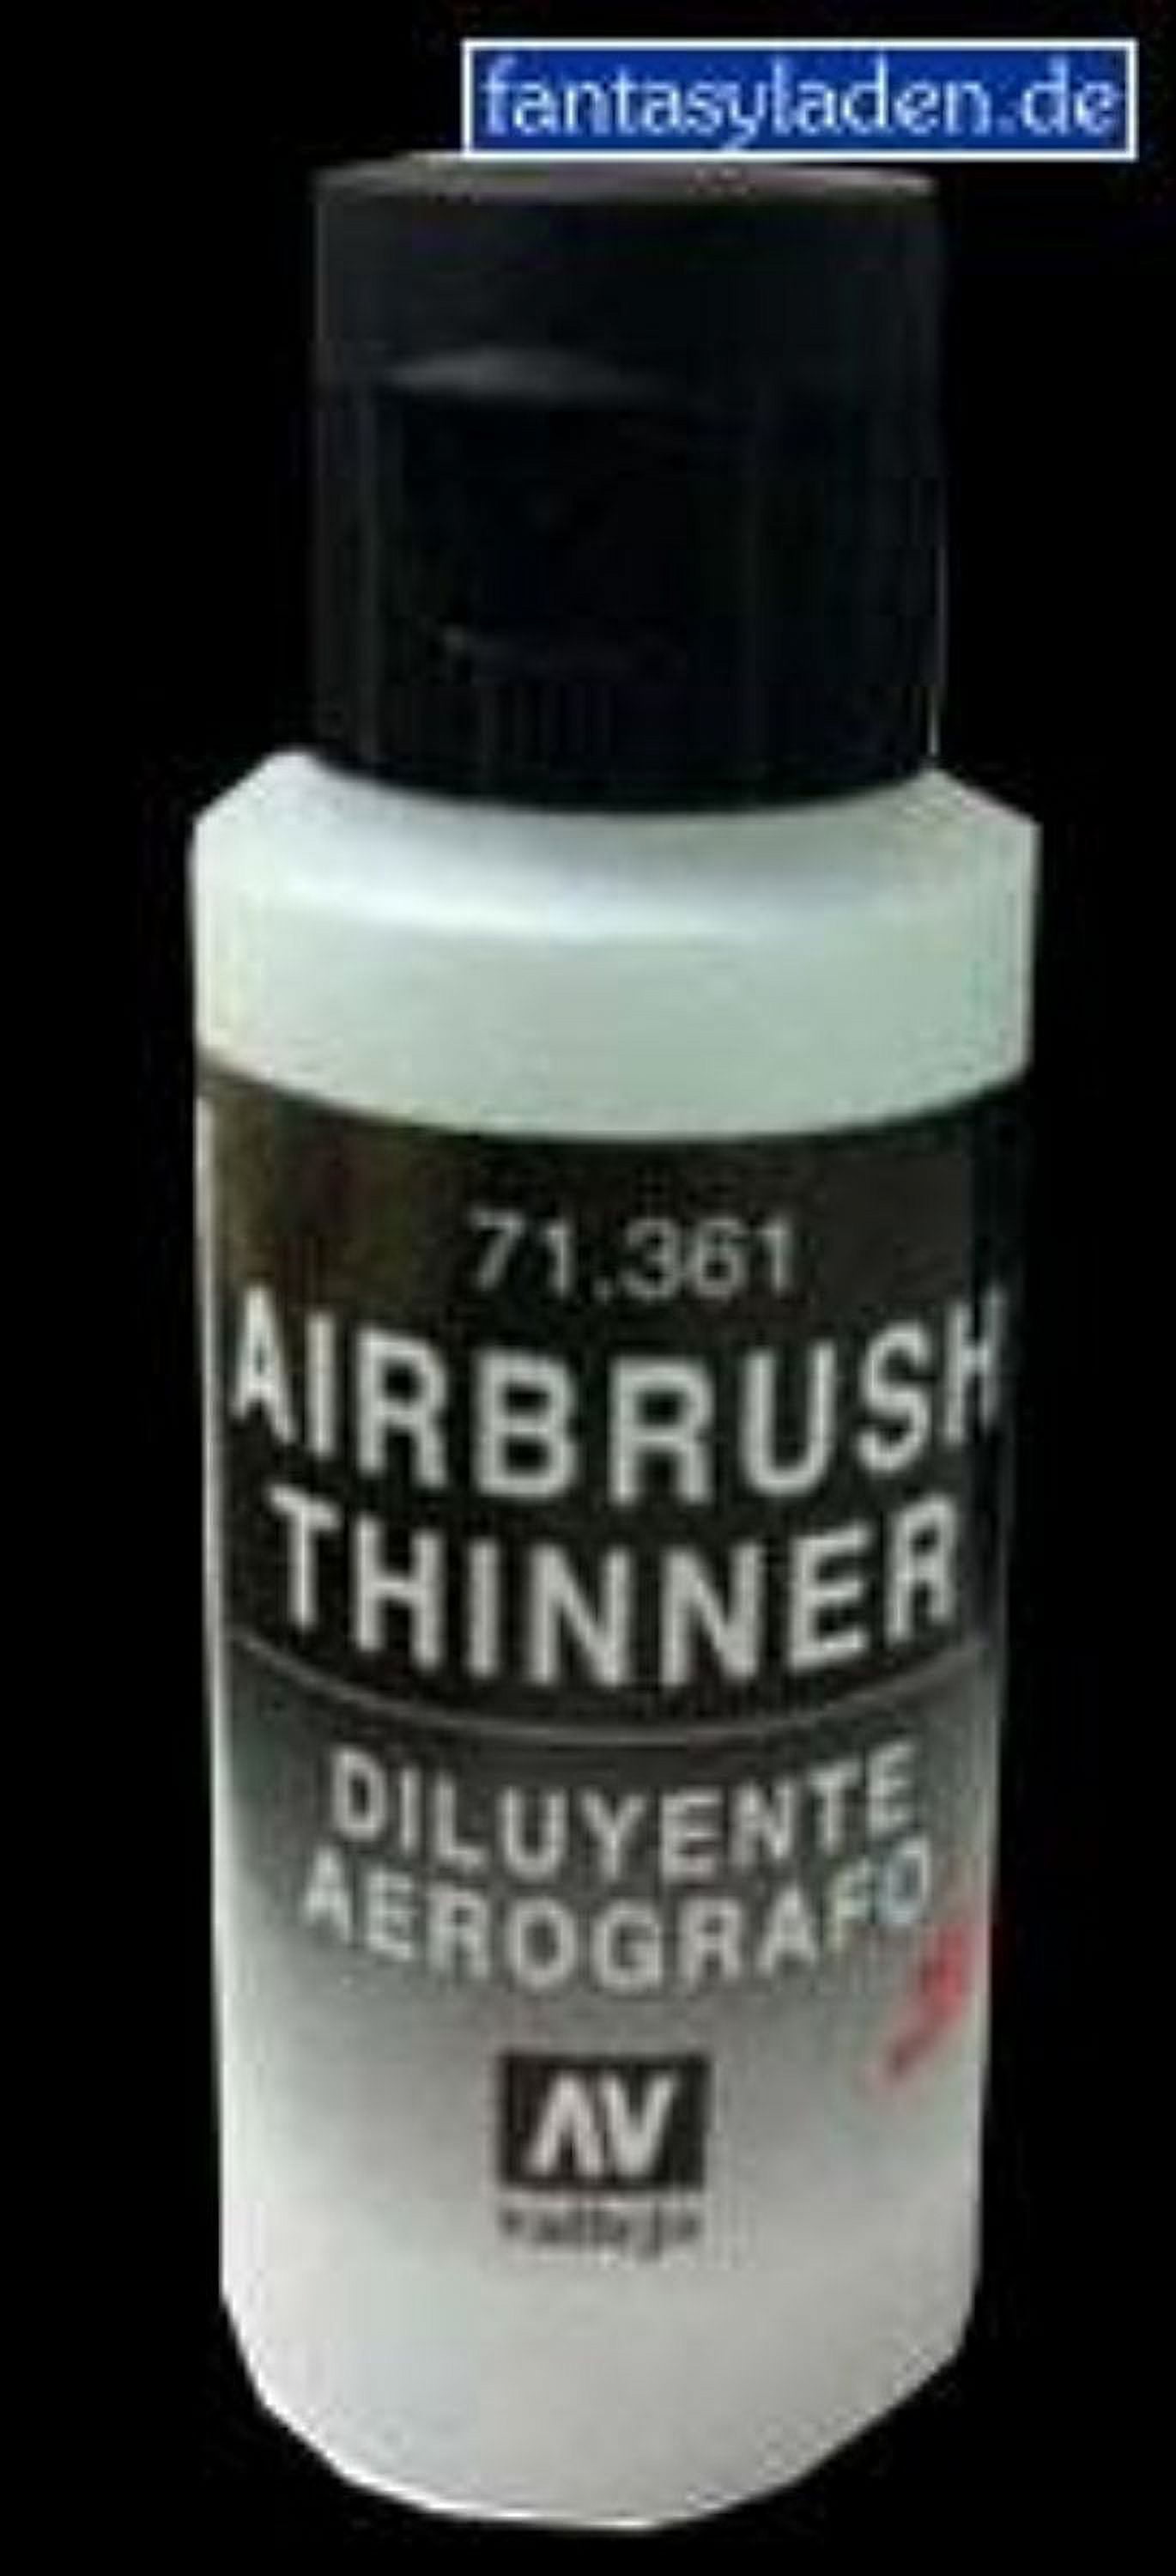 Vallejo 71.061 Airbrush Thinner 32ml Bottle